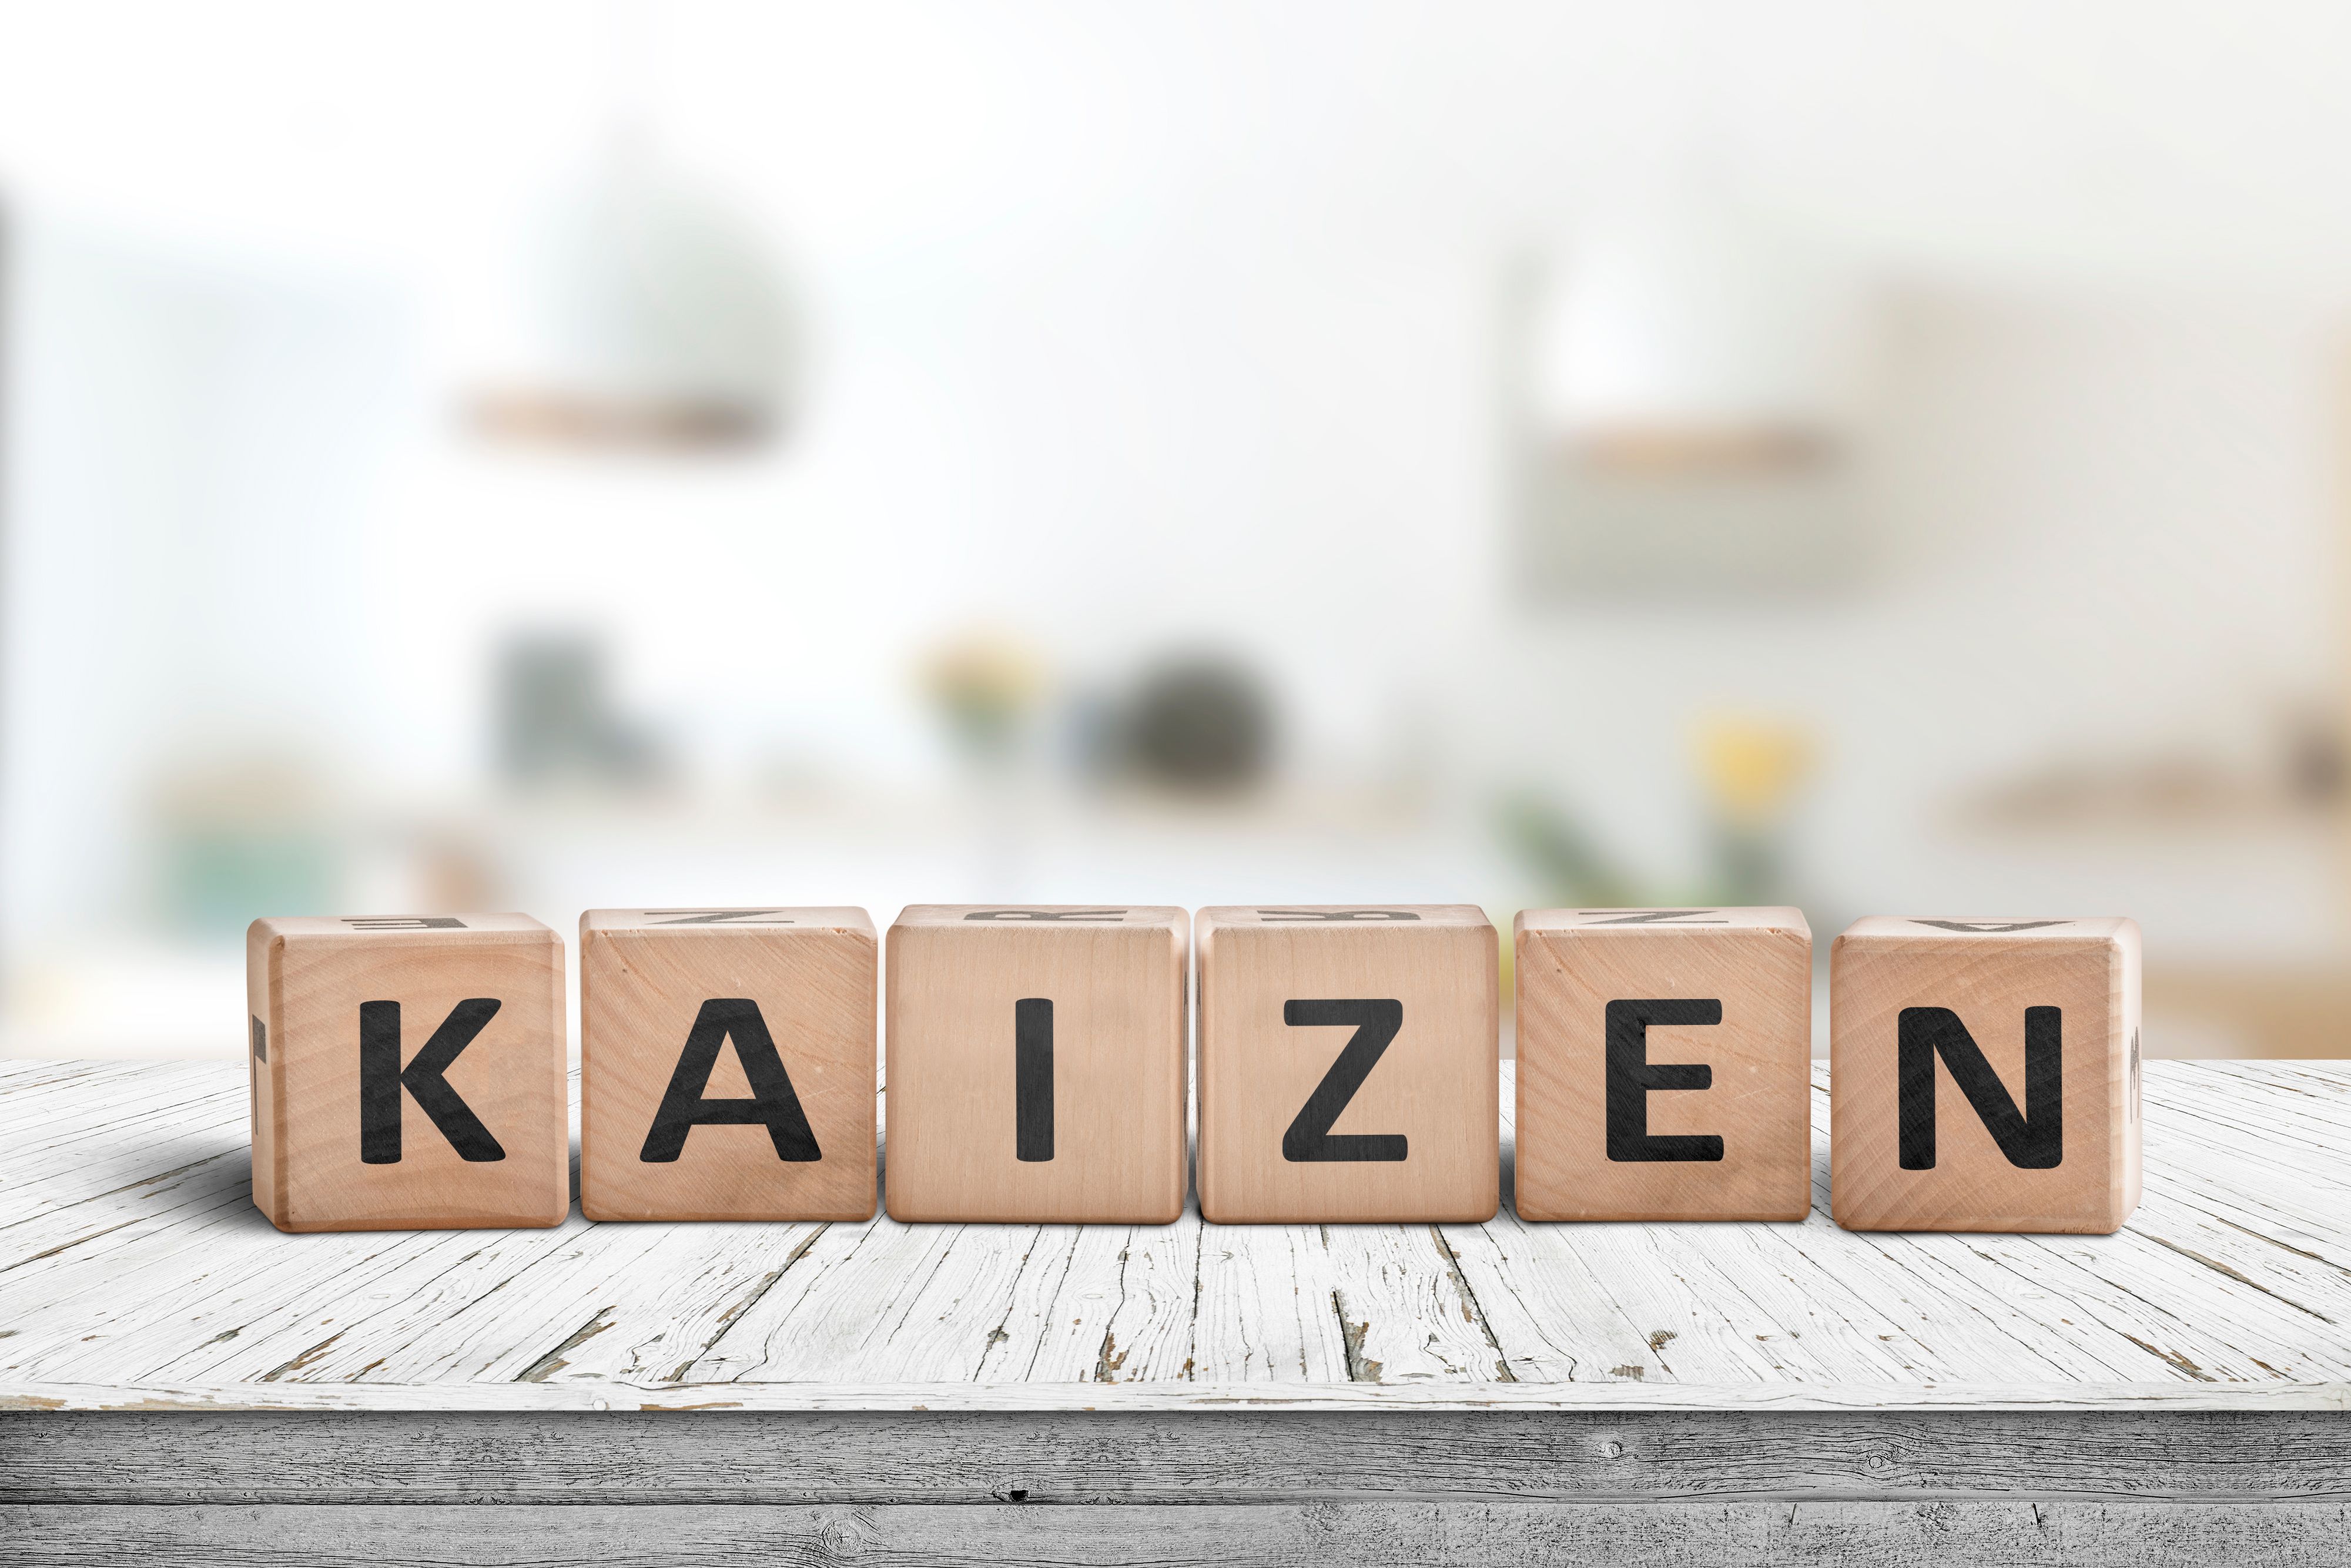 Filozofia Kaizen przyczynia się m.in. do poprawy jakości, eliminacji nieefektywności, właściwej organizacji stanowiska pracy oraz optymalizacji procesów. (Fot. Shutterstock)